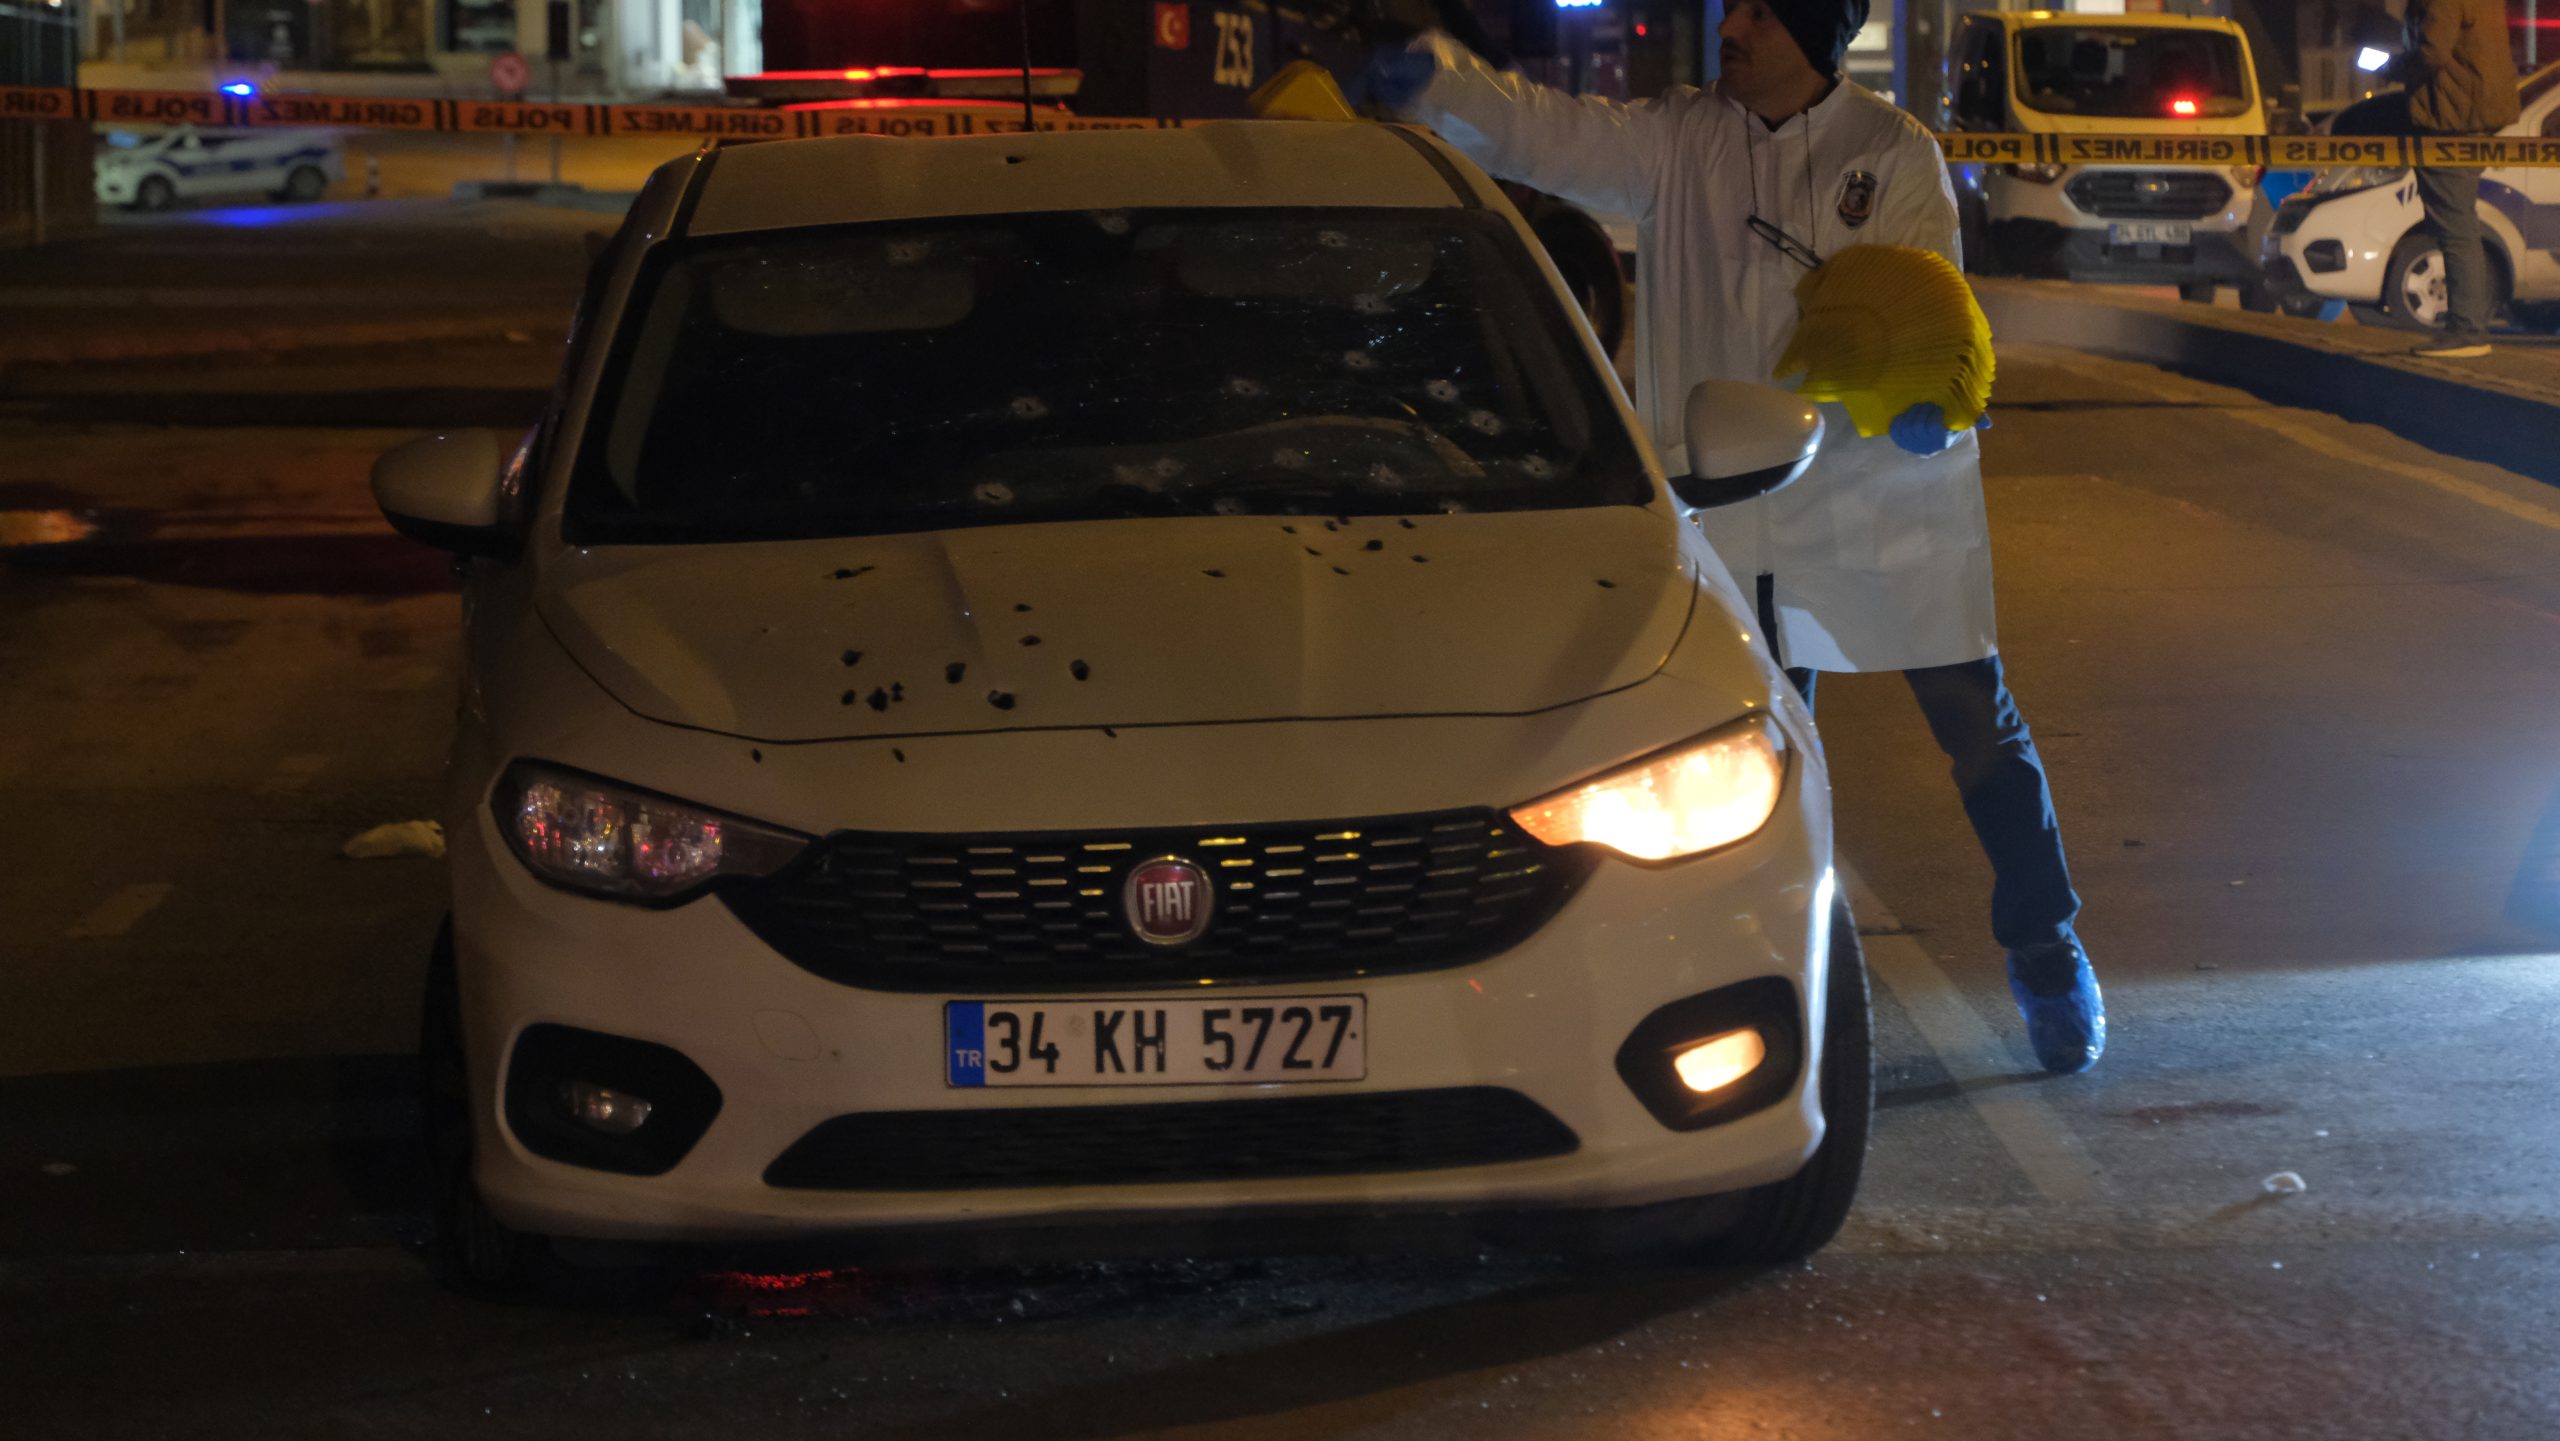 İstanbul'da seyir halindeki otomobile uzun namlulu silahlarla saldırı düzenlendi